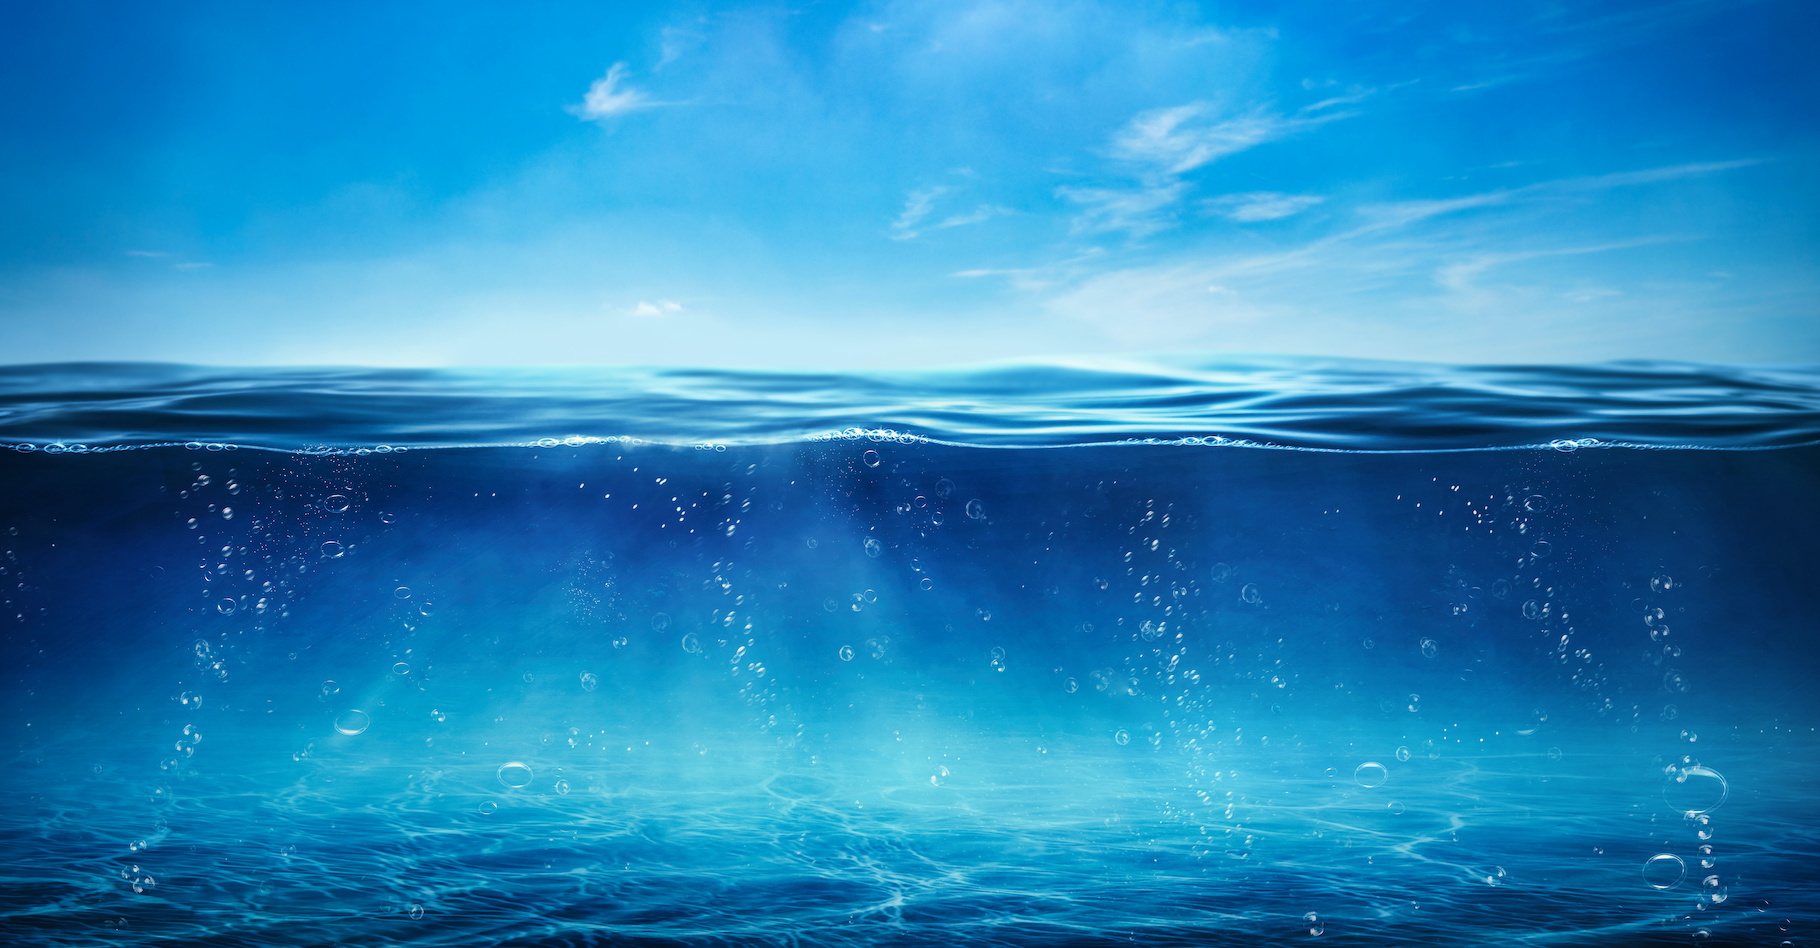 En déterminant plus précisément la quantité d'eau douce qui s'échappe des océans, les scientifiques peuvent mieux évaluer la quantité de pluie qui risque de tomber sur une région. © Sagittarius Pro, Adobe Stock